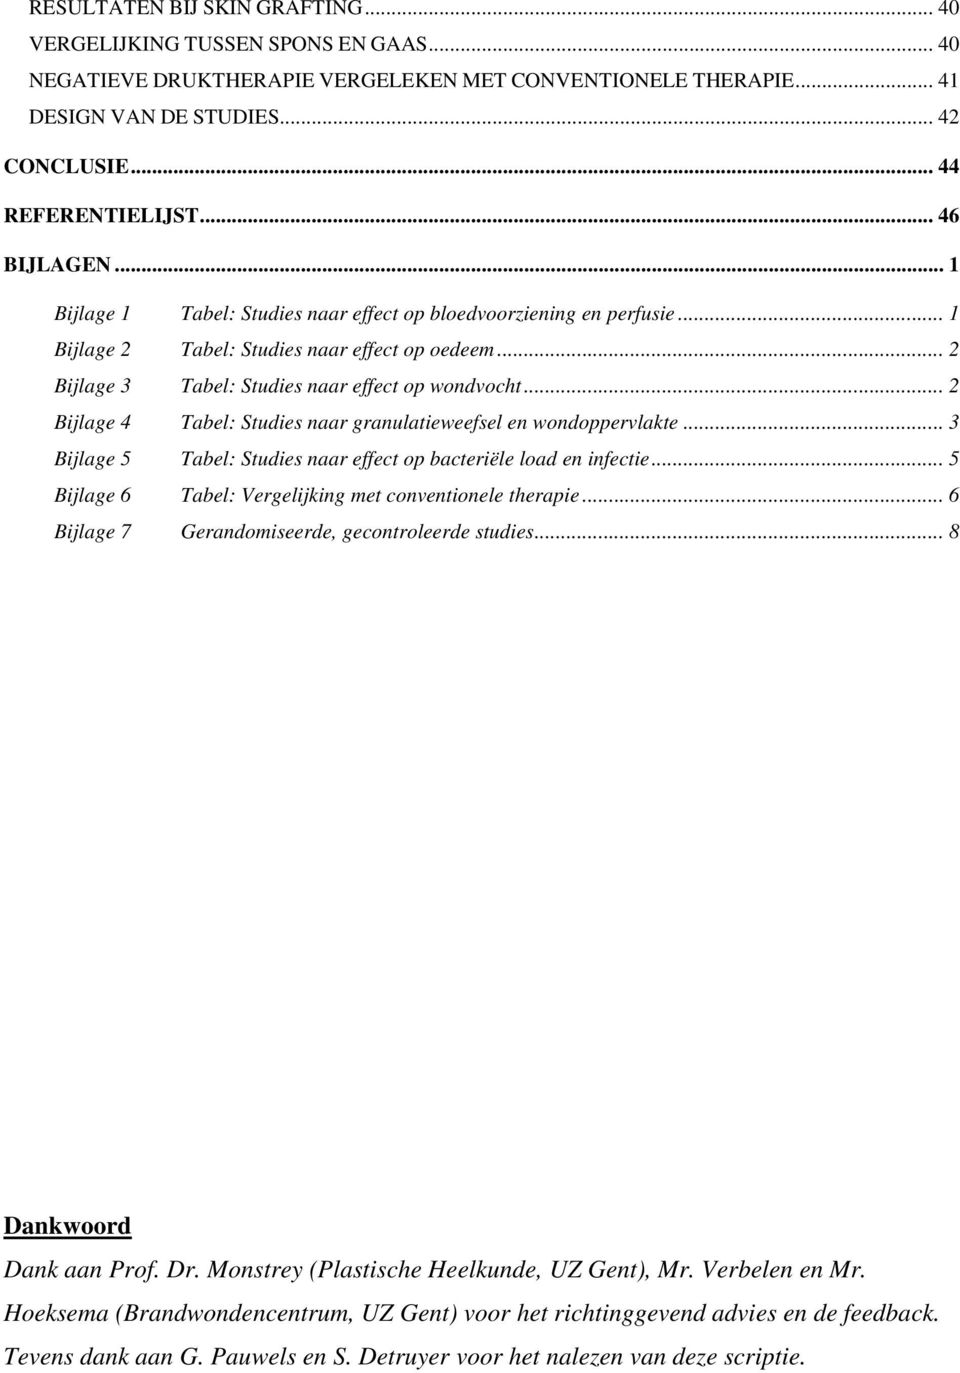 .. 2 Bijlage 4 Tabel: Studies naar granulatieweefsel en wondoppervlakte... 3 Bijlage 5 Tabel: Studies naar effect op bacteriële load en infectie.